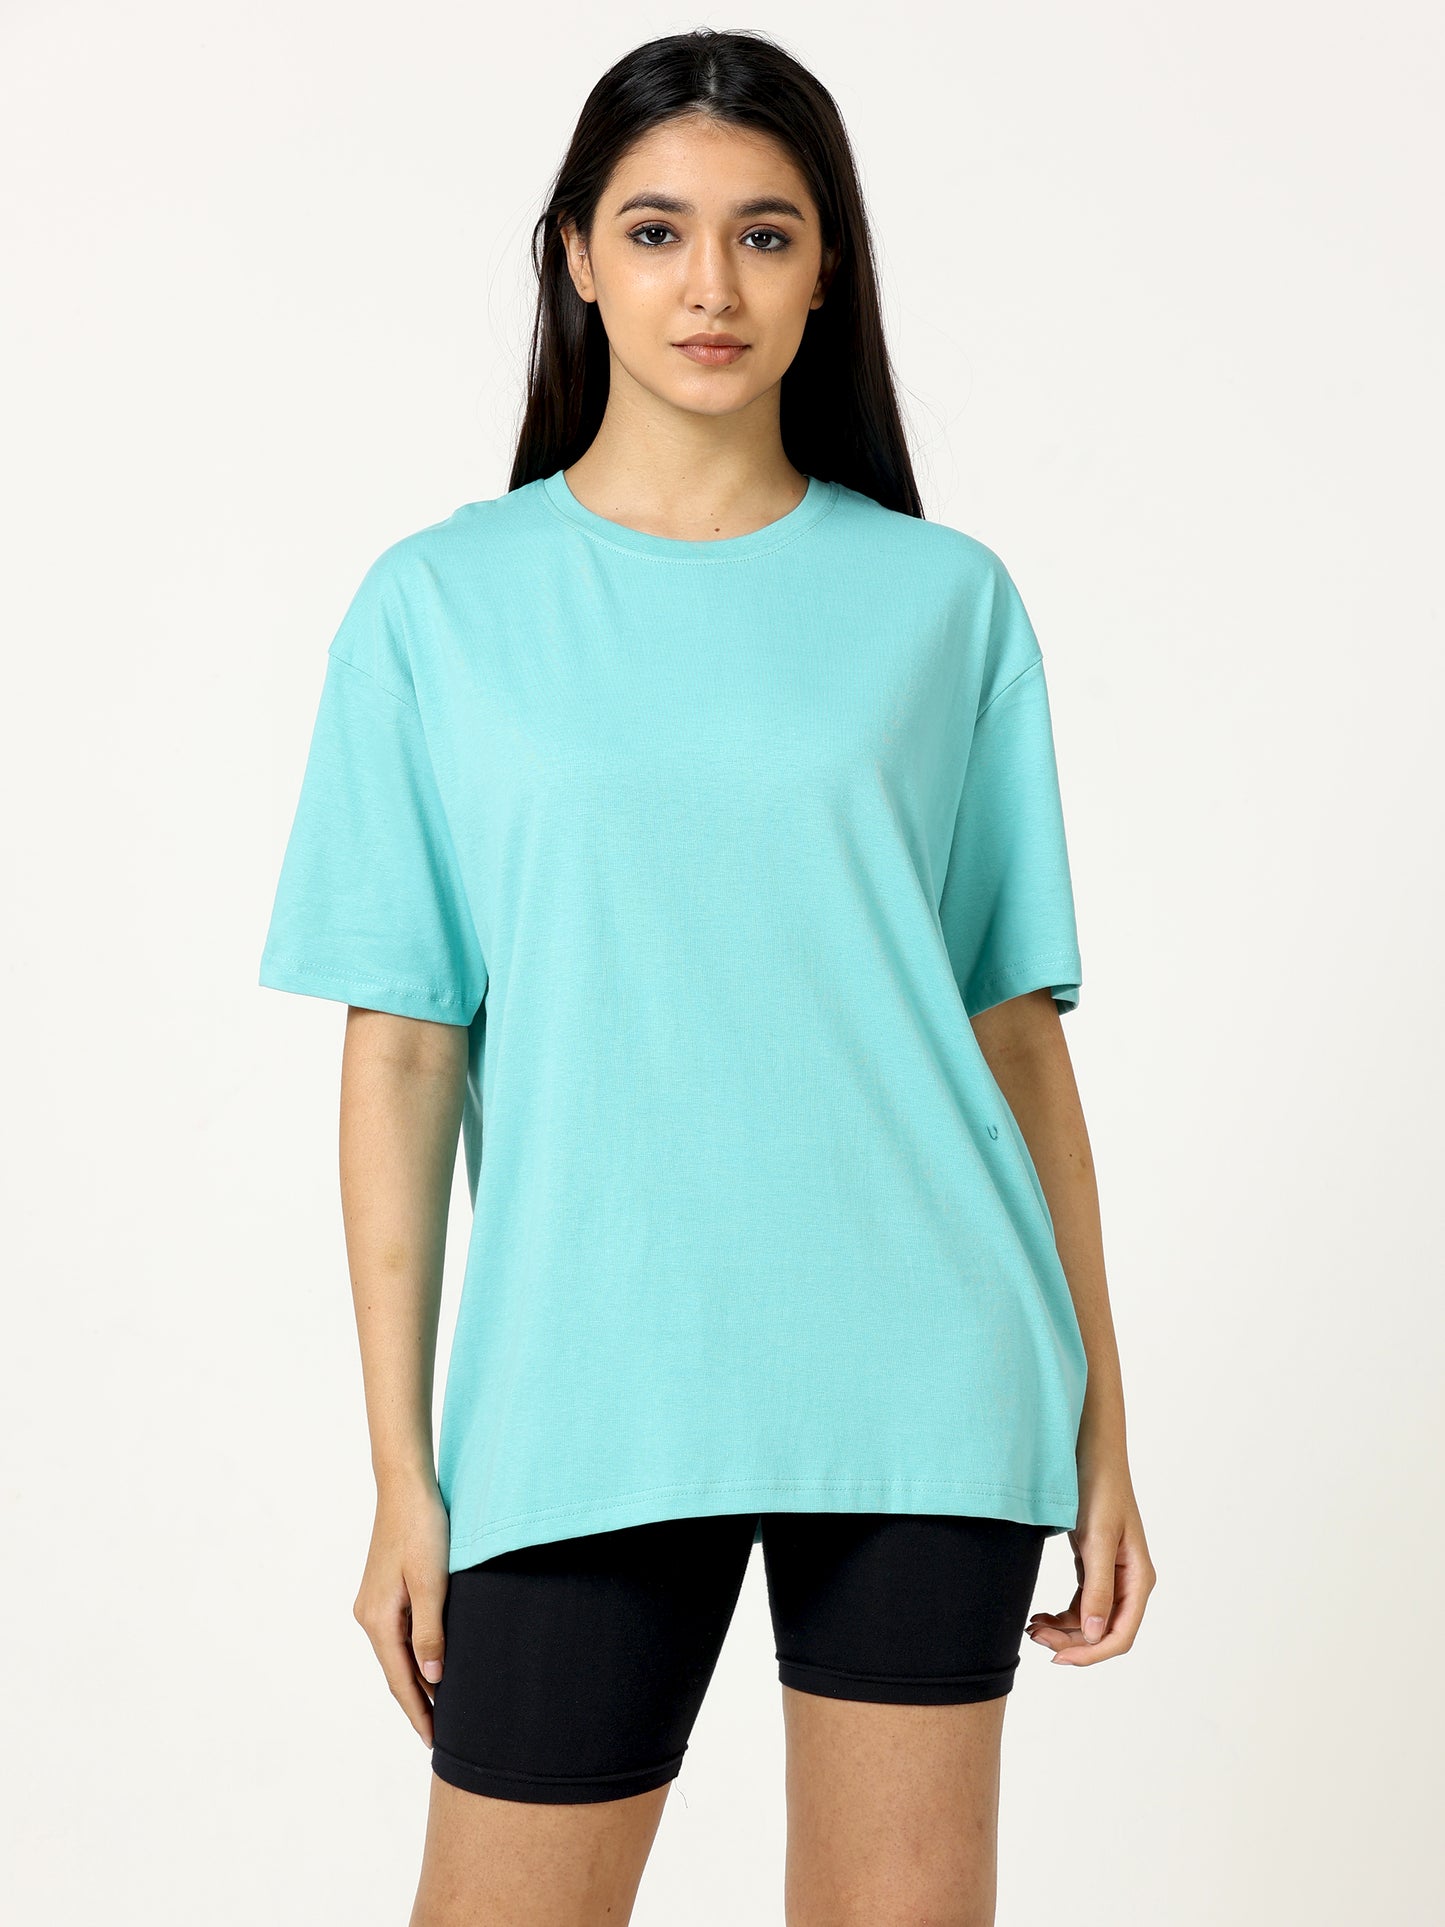 Aqua Marine Oversized T-shirt -UNISEX